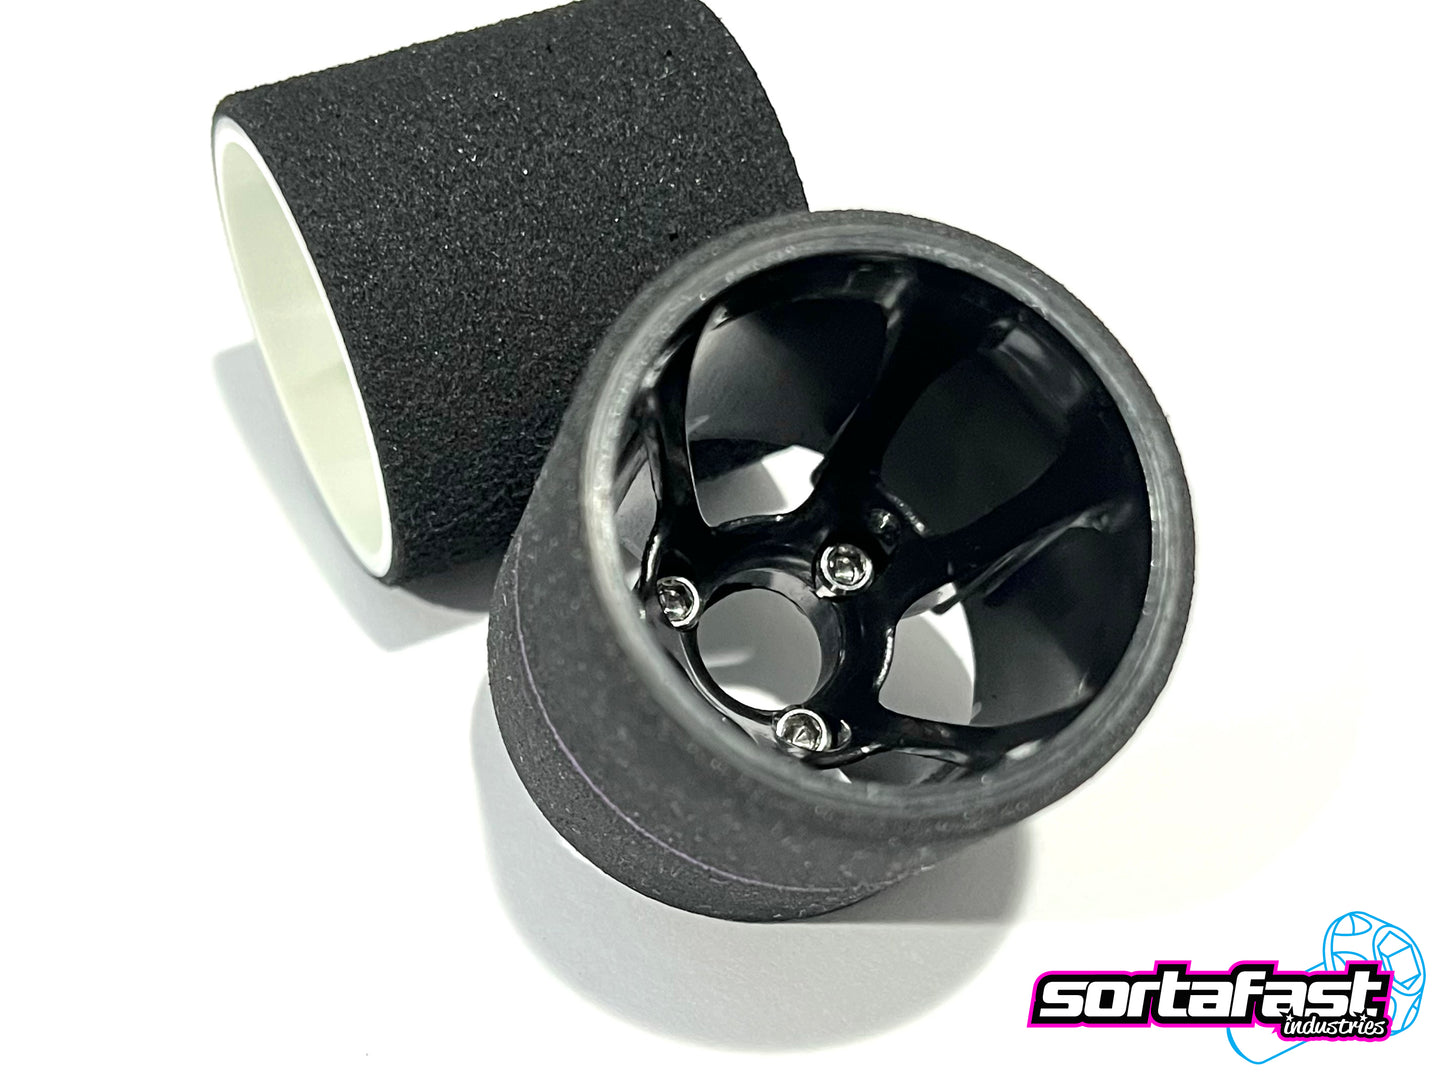 Sortafast Titanium Screws - Pan Car Rear Wheel / Cap Head - 6pk (Metric)